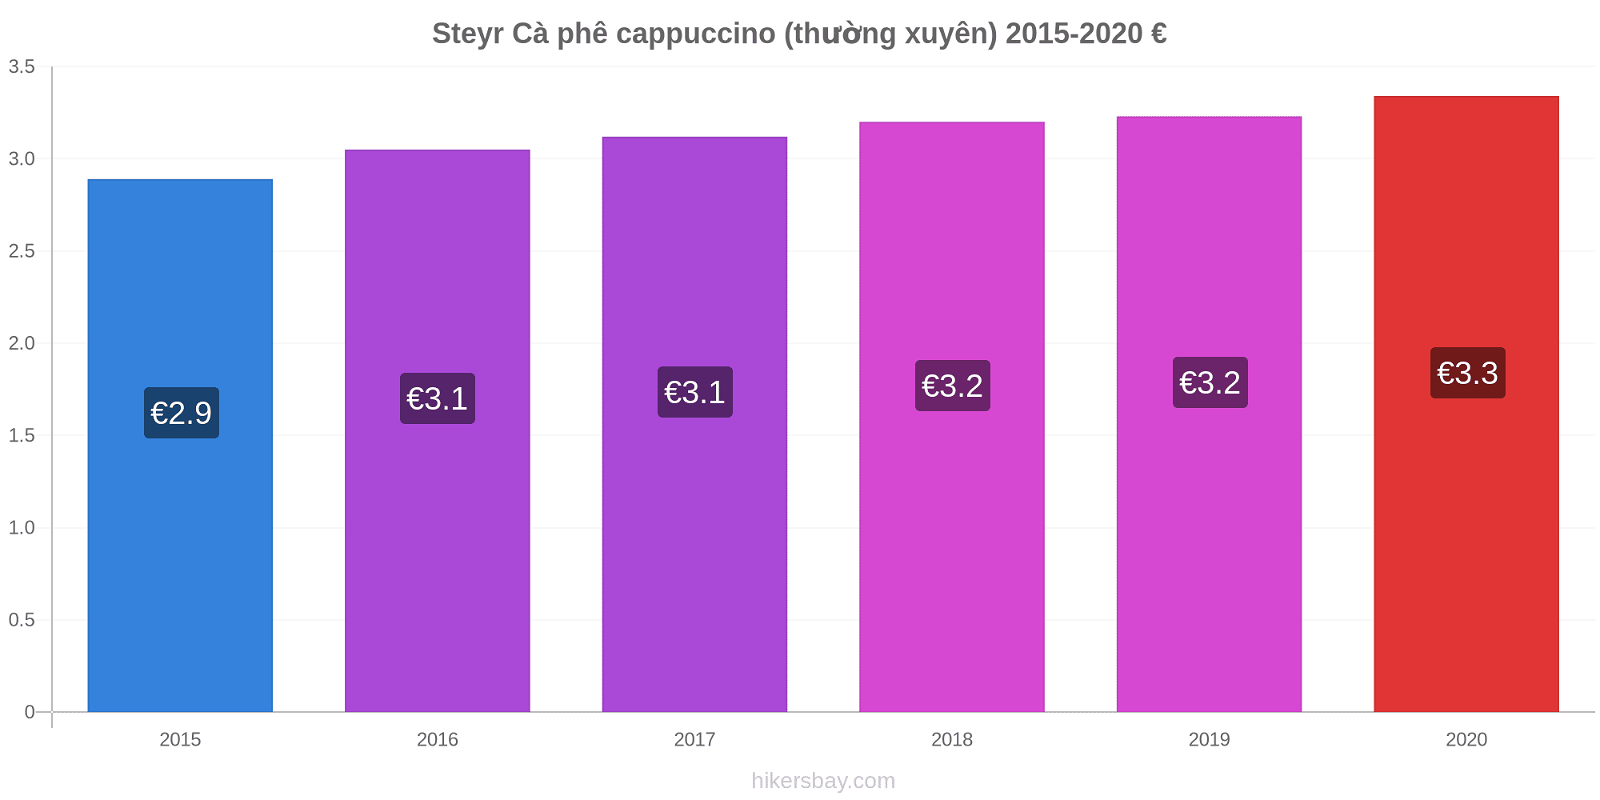 Steyr thay đổi giá Cà phê cappuccino (thường xuyên) hikersbay.com